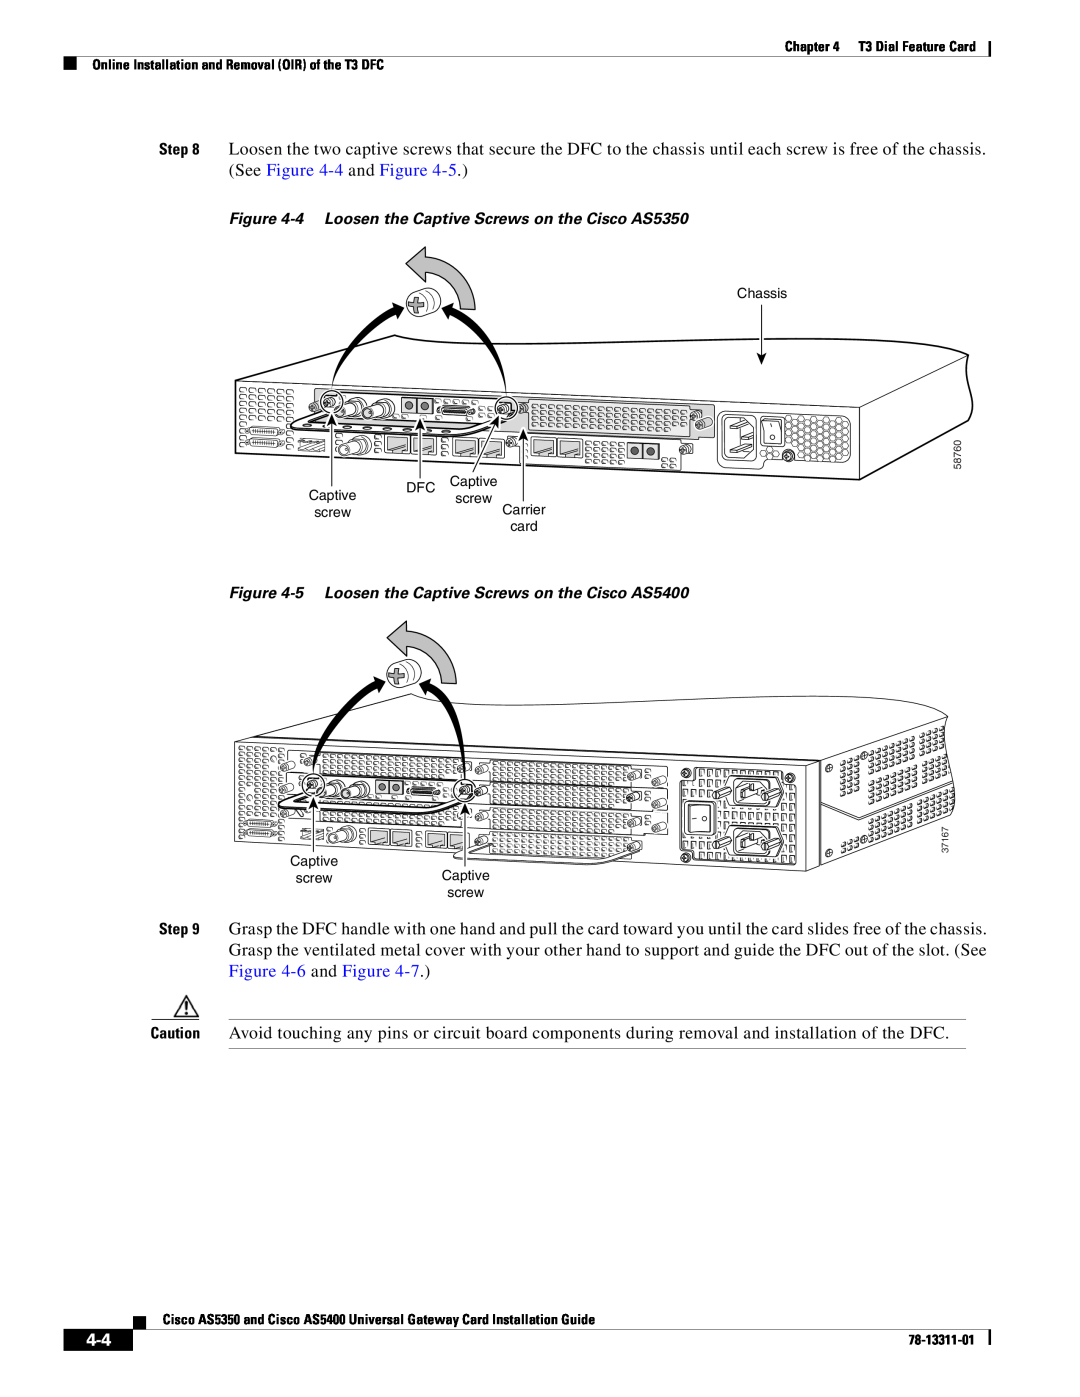 Cisco Systems manual 4 Loosen the Captive Screws on the Cisco AS5350, 5 Loosen the Captive Screws on the Cisco AS5400 